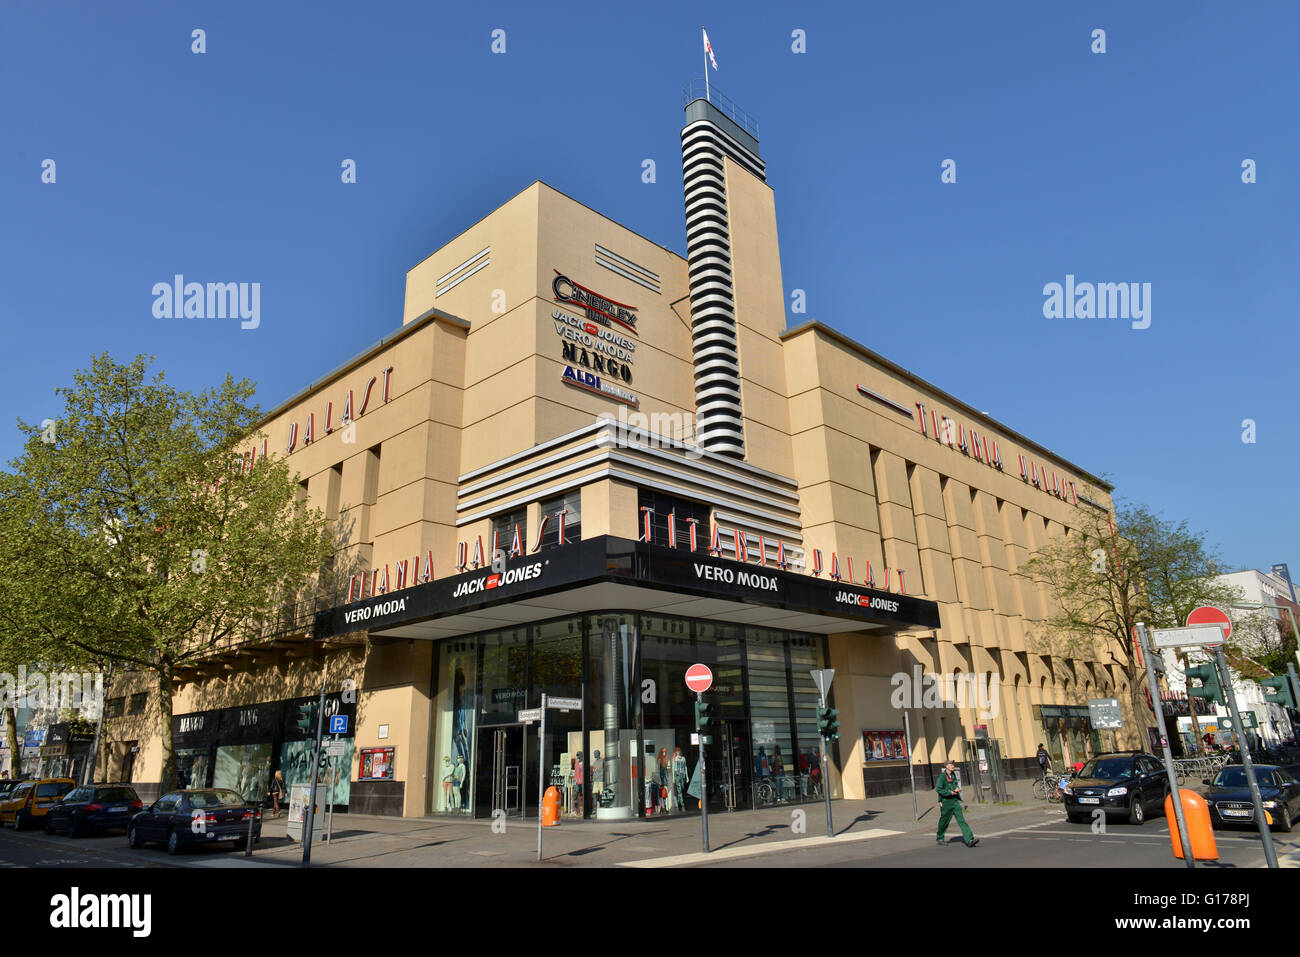 Kino Titania-Palast, Schlossstrasse, Steglitz, Berlin, Deutschland Banque D'Images